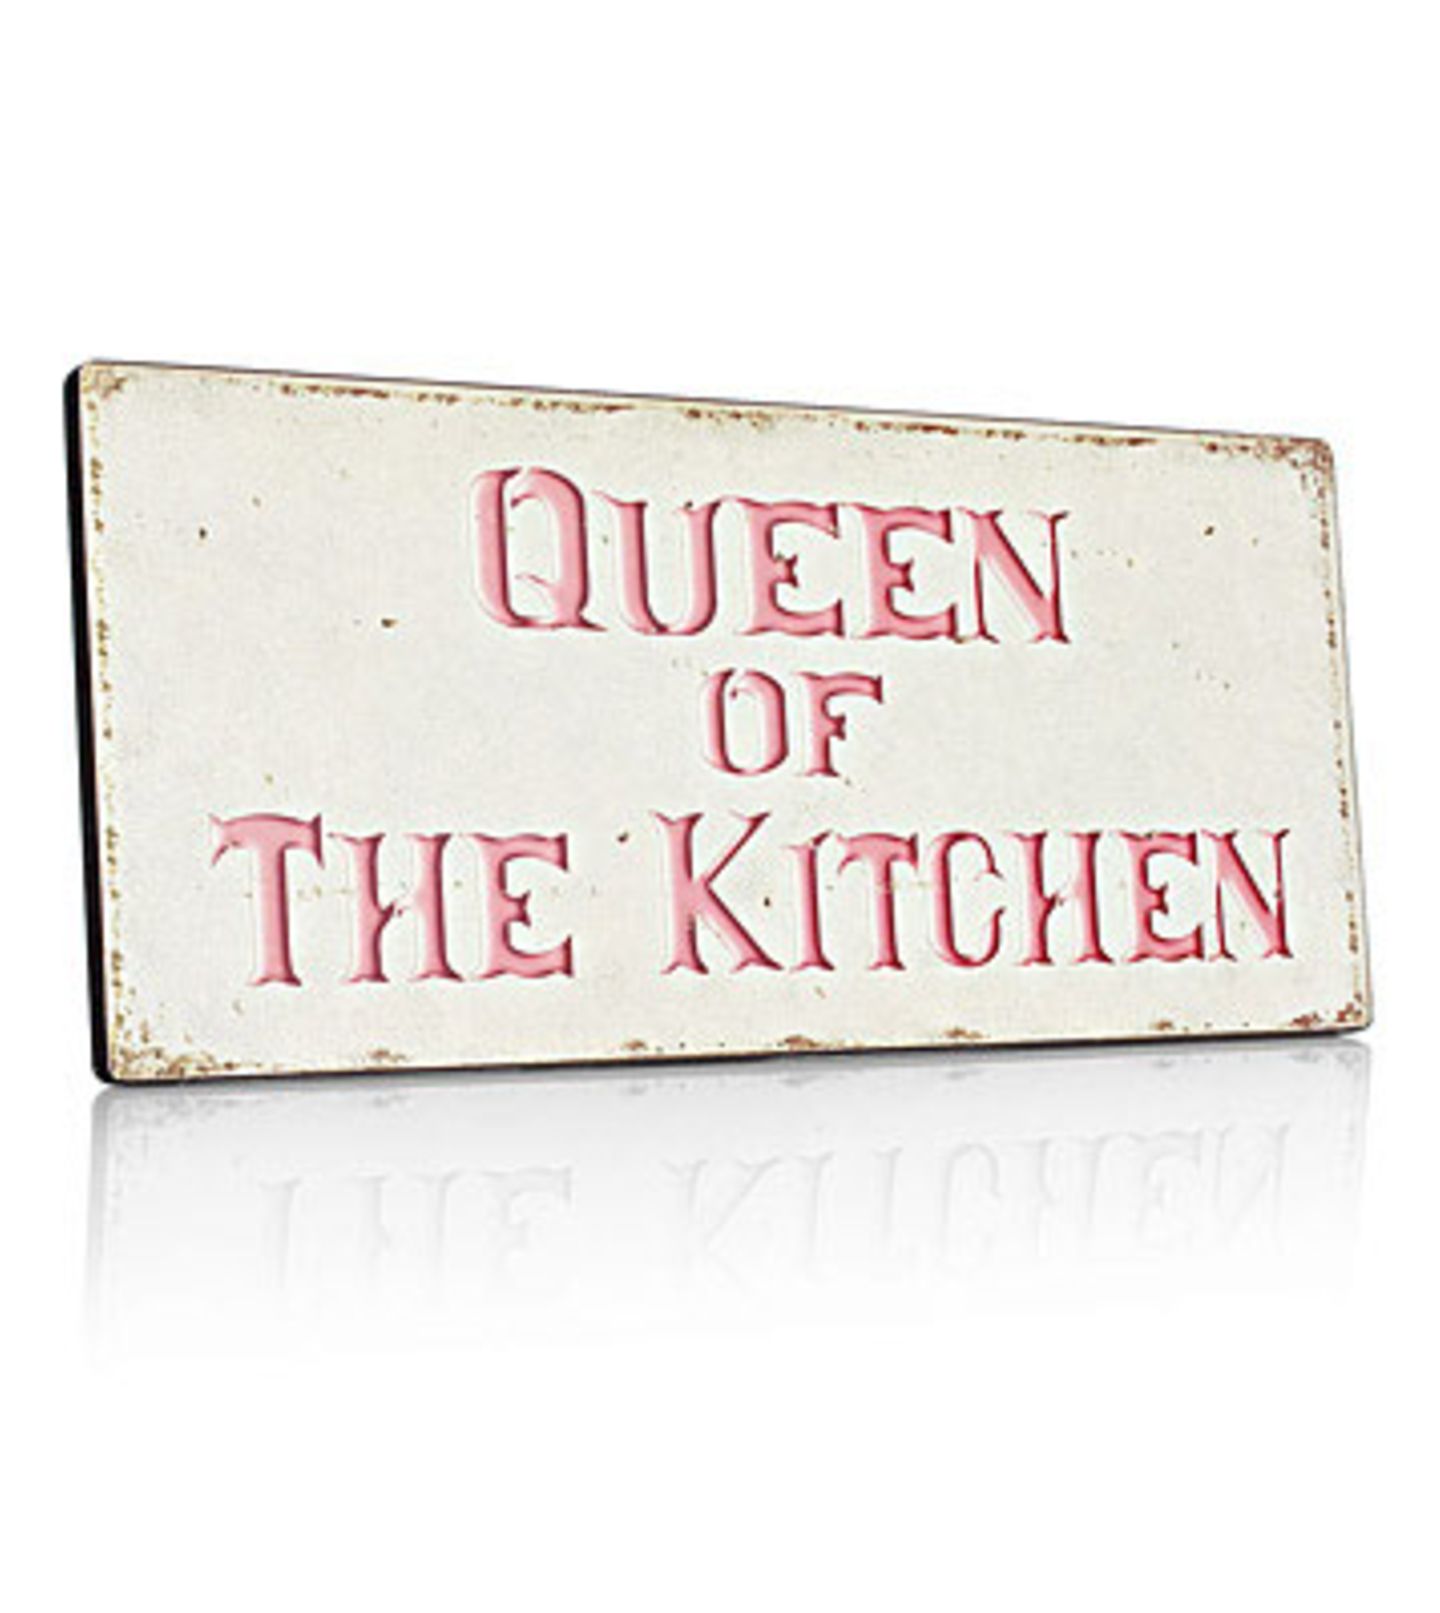 Queen of the kitchen Wer hat hier das sagen? Du natürlich! Und dank diesem Schild, wissen es gleich alle, die deine Küche betreten. Das Deko-Schild in Creme mit rosa Aufschrift gibt es für 9,95 Euro zzgl. Versandkosten über >> www.impressionen.de